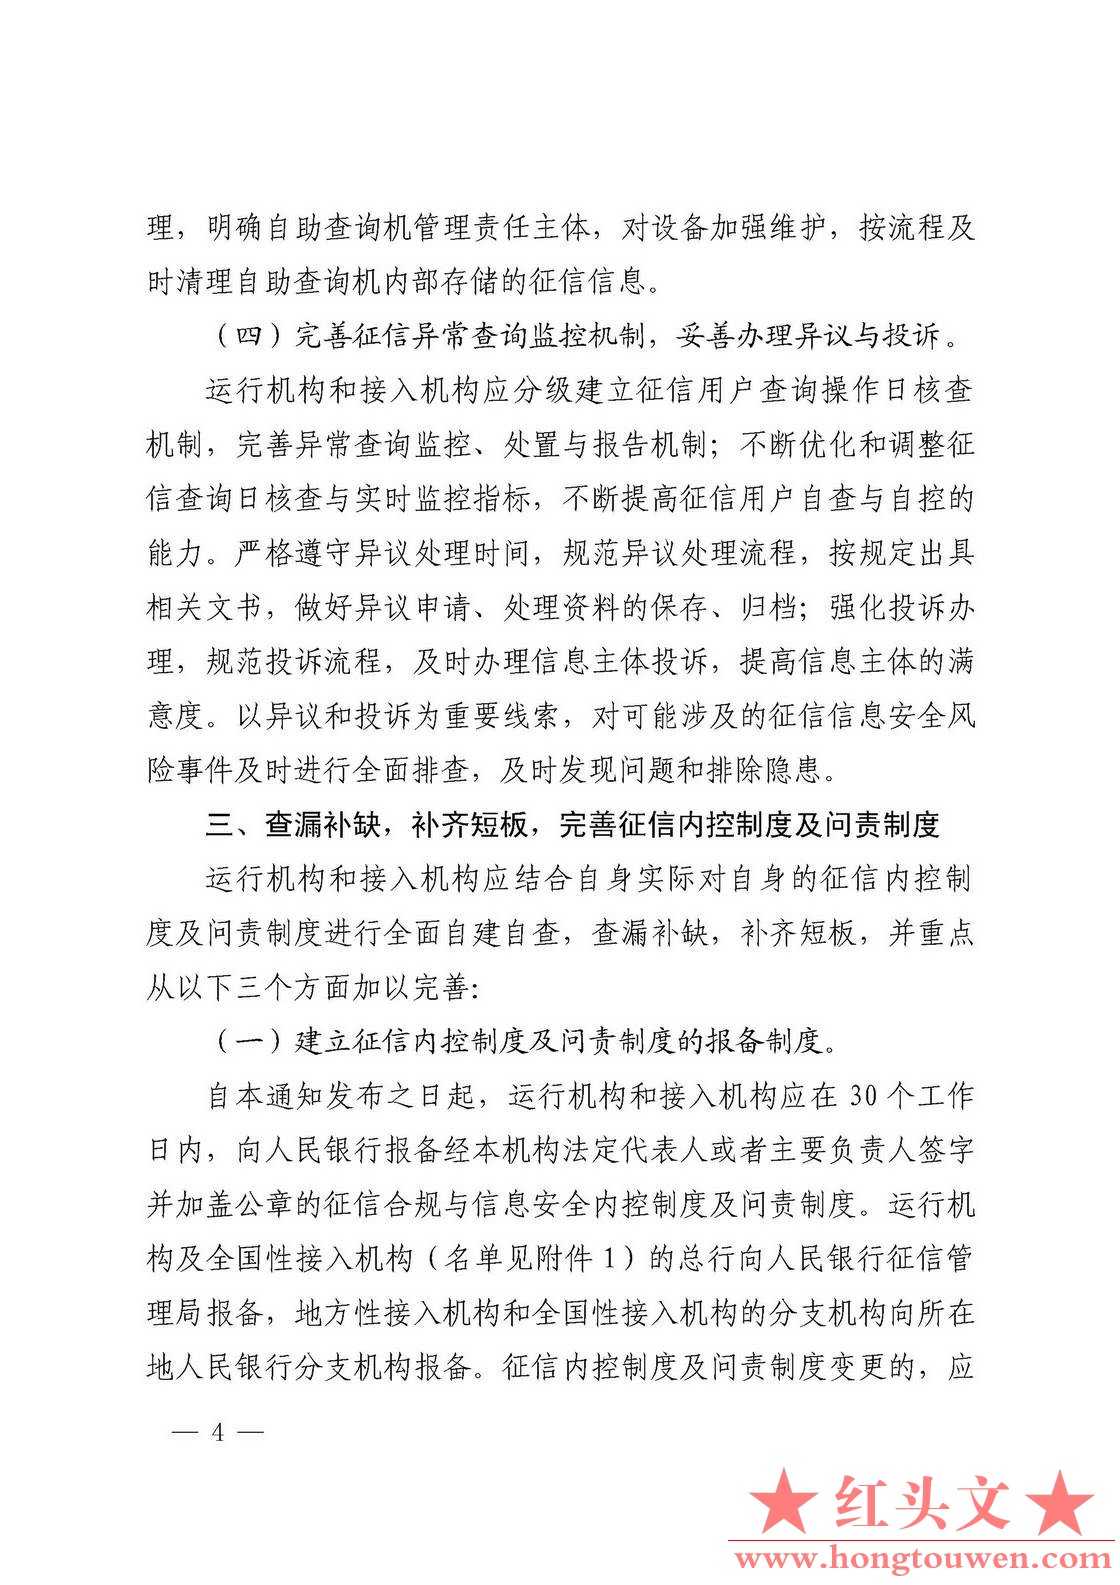 银发[2018]102号-中国人民银行关于进一步加强征信信息安全管理的通知_页面_04.jpg.jpg